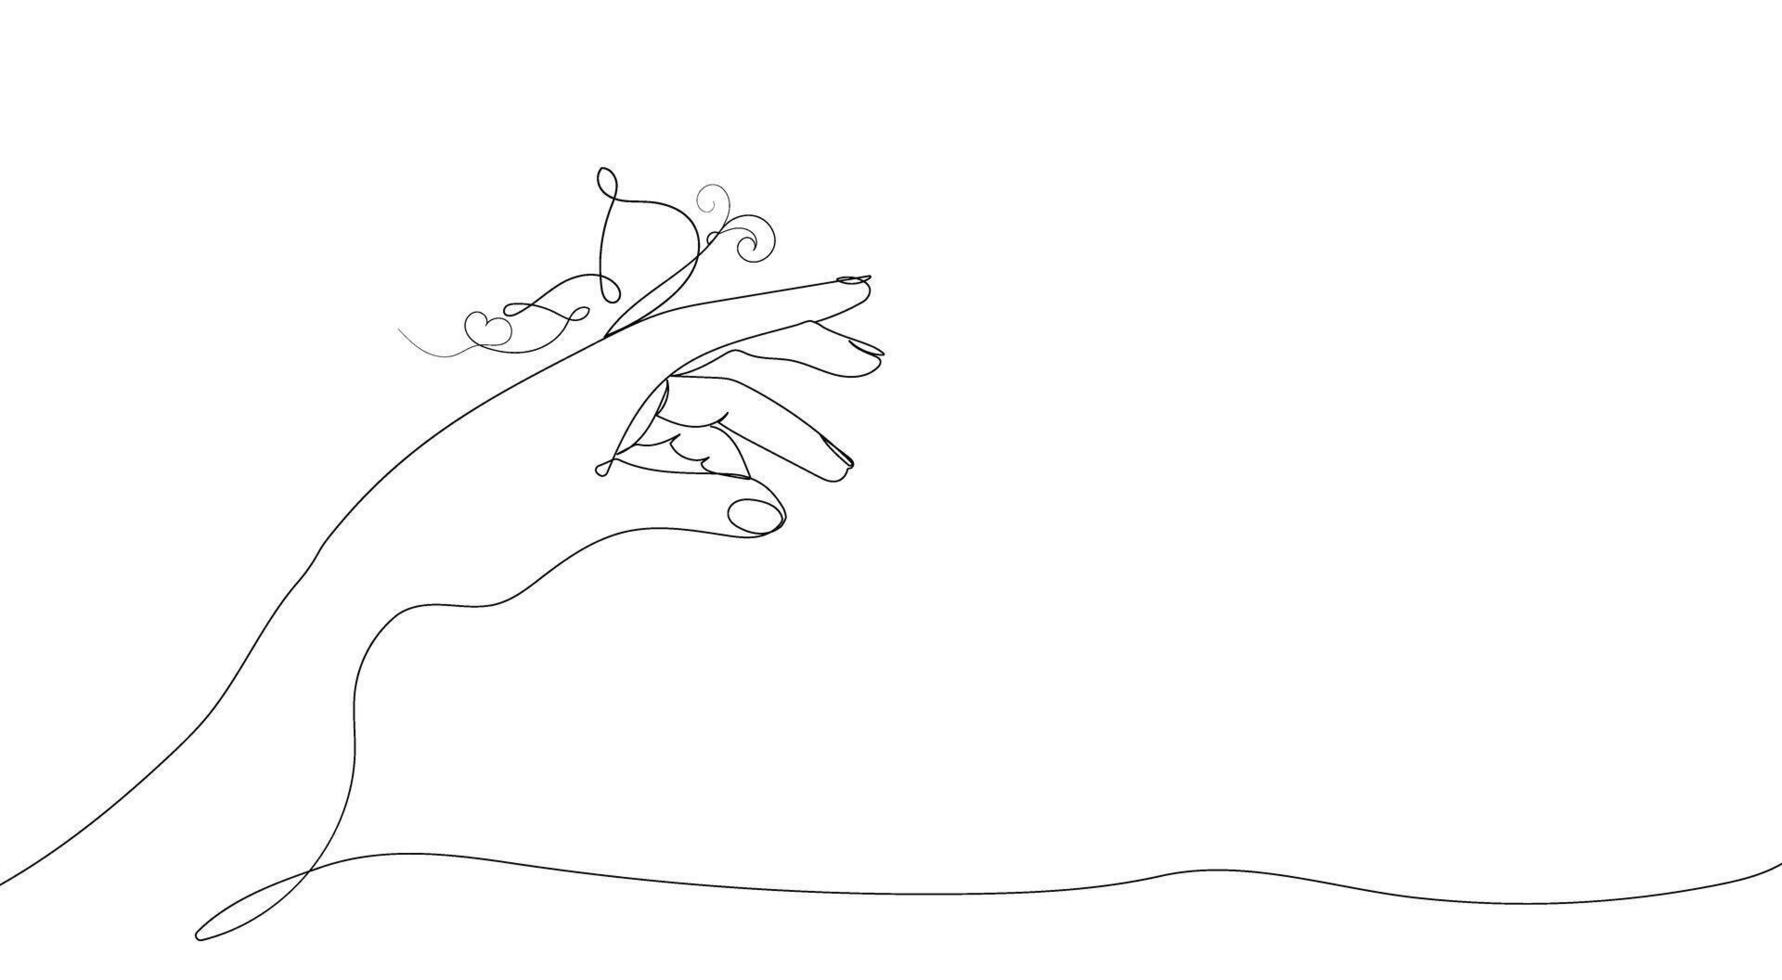 un extendido mano en cuales un mariposa se sienta.estilo uno continuo línea dibujo. símbolo, bandera, fondo, logo, para impresión vector